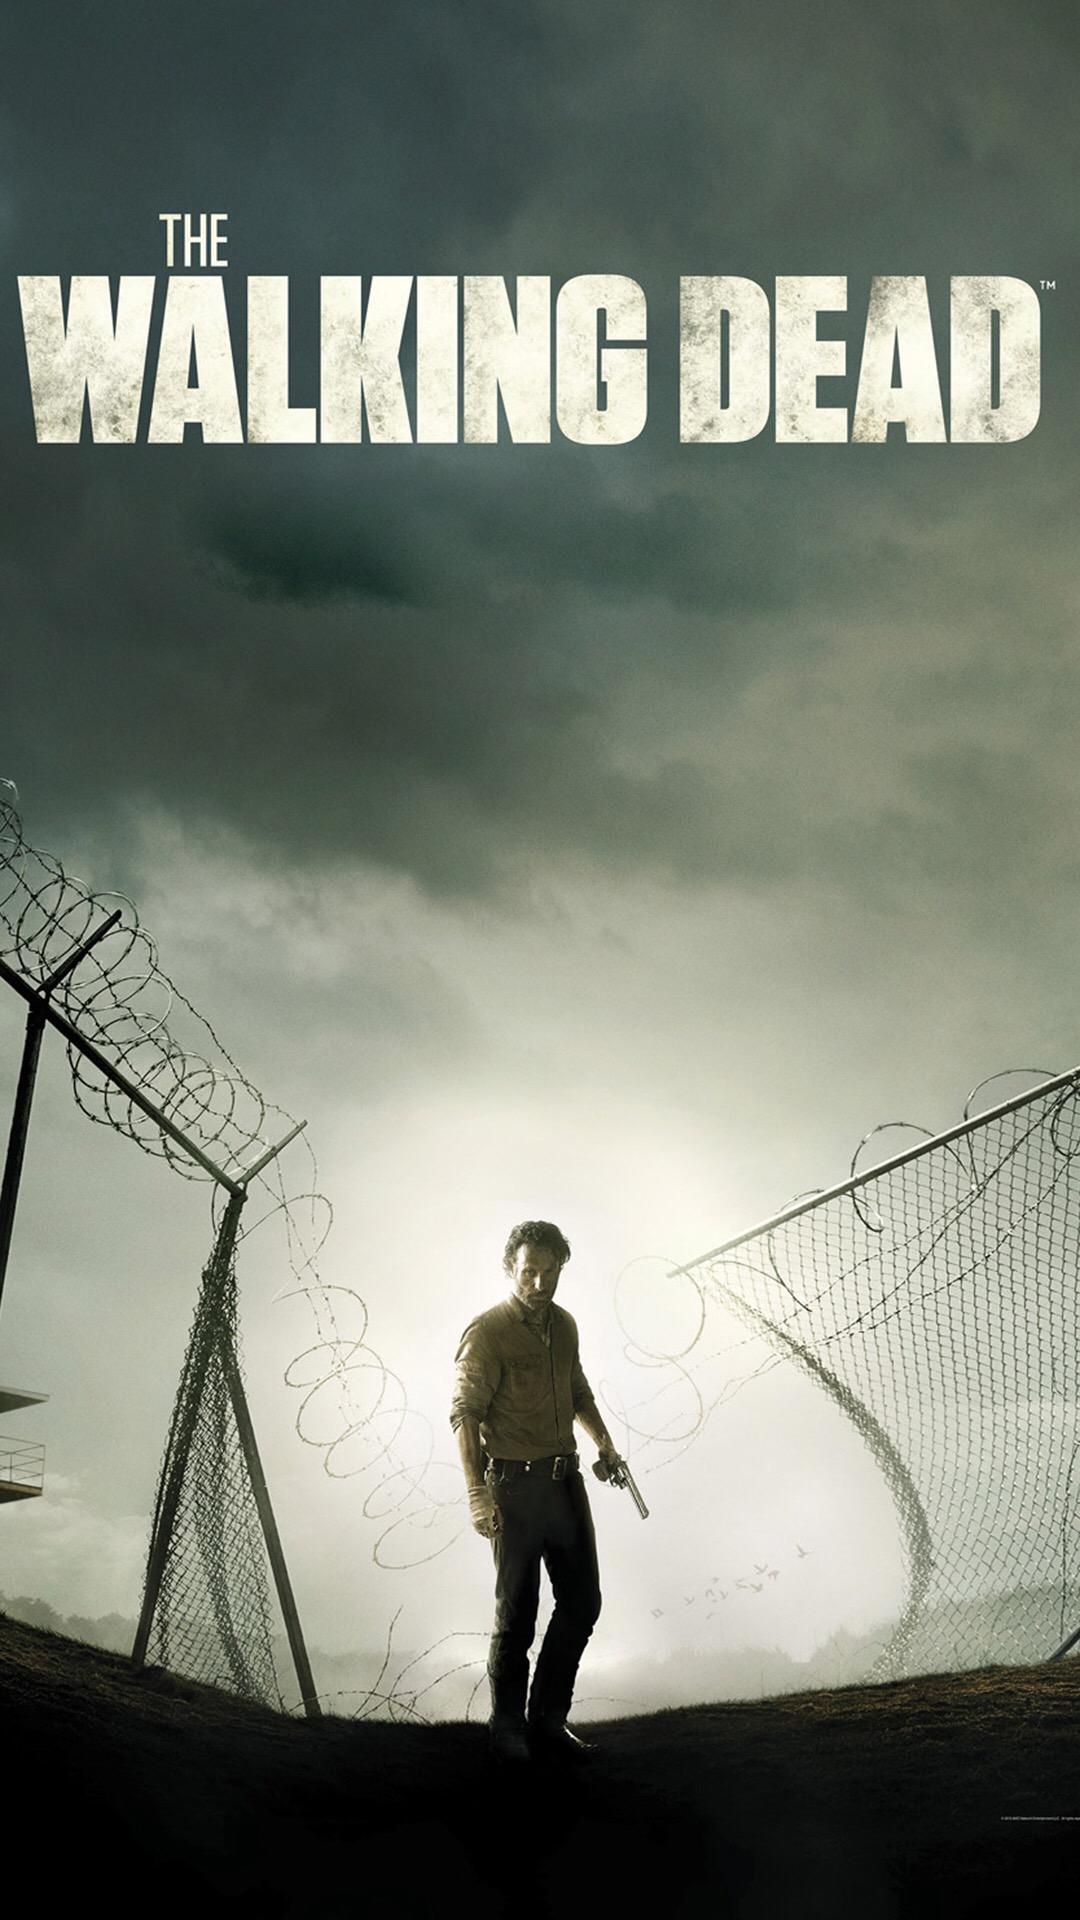 Wallpaper of the week: The Walking Dead